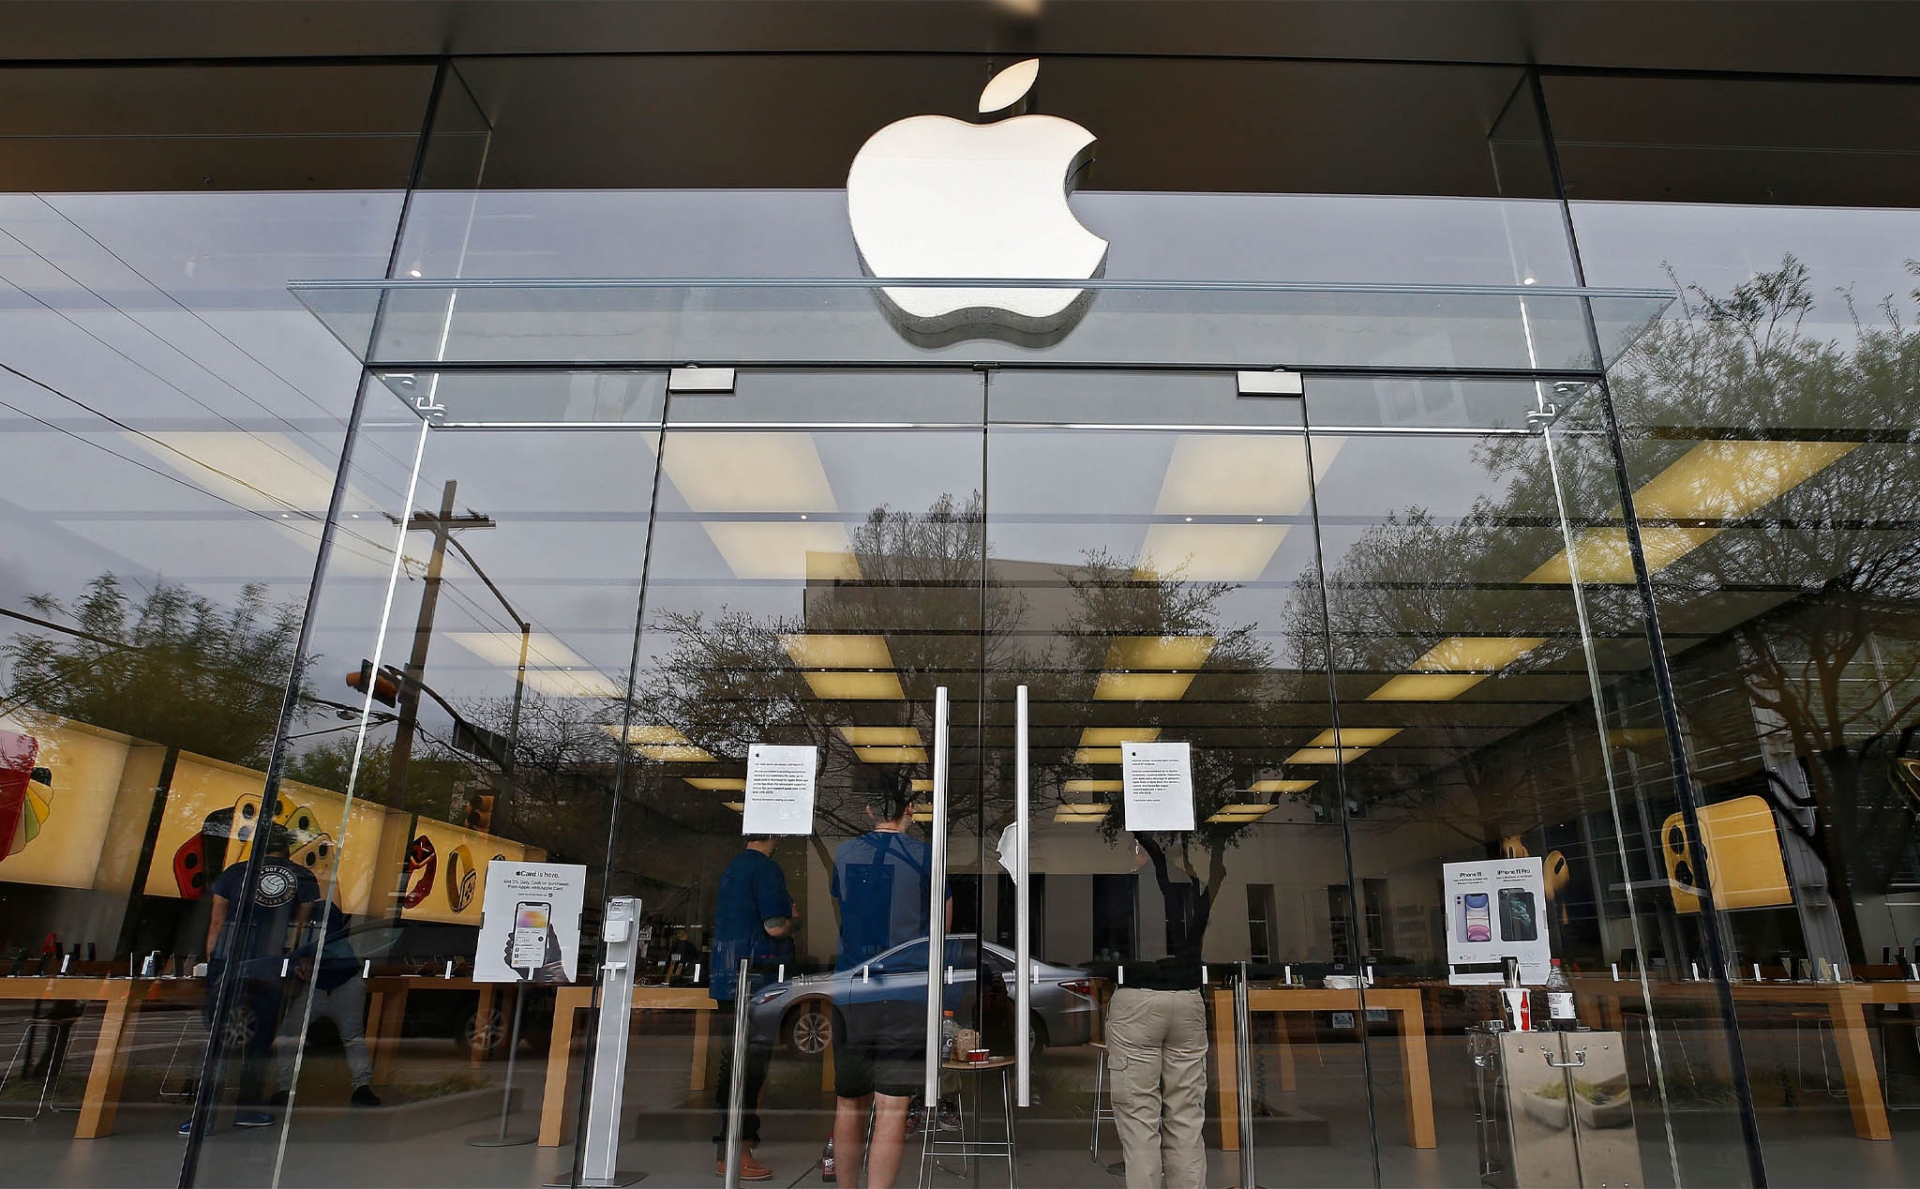 Apple recruits plenty of vacancies in Vietnam